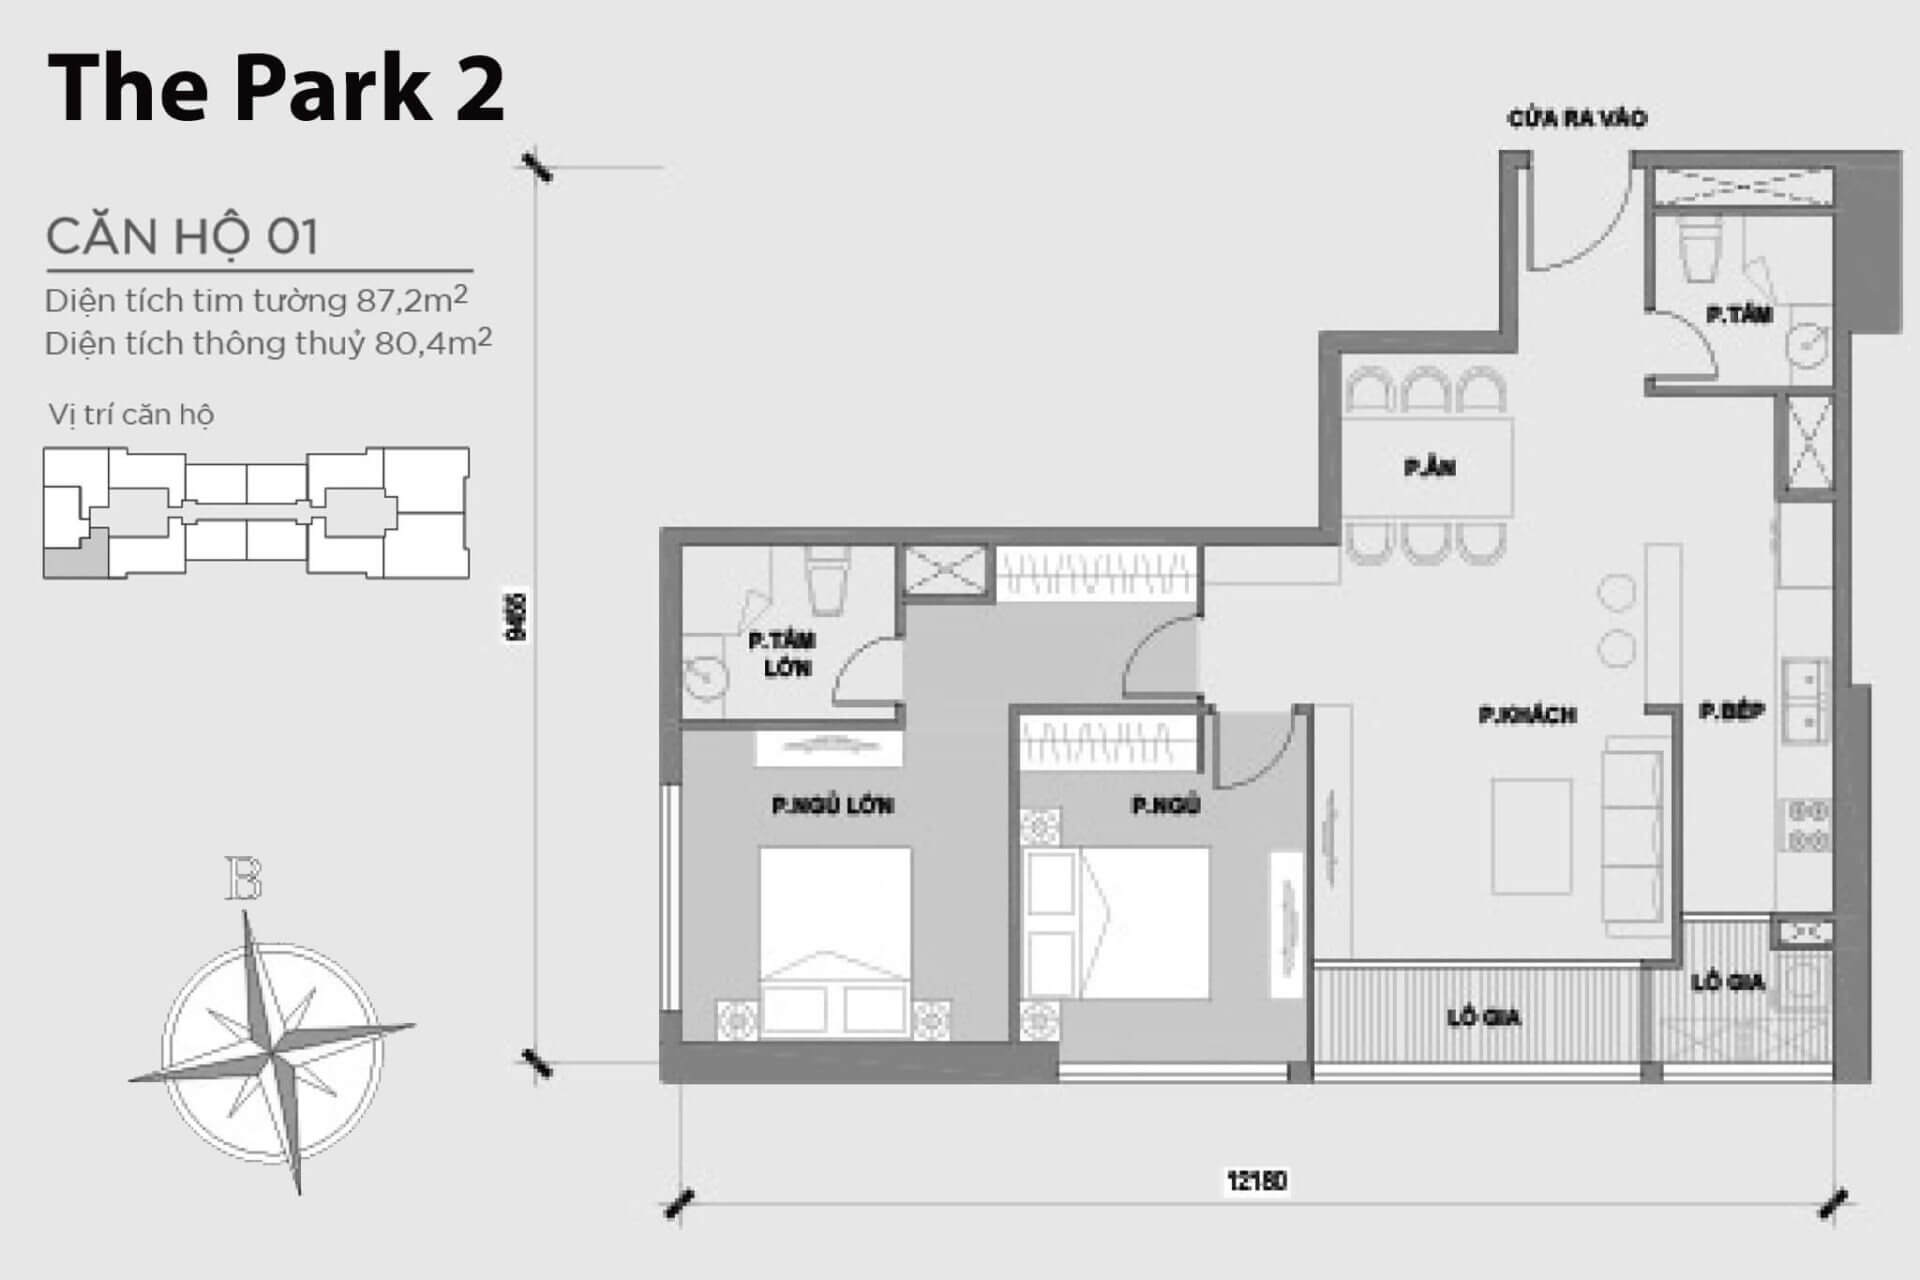 mặt bằng layout căn hộ số 01 Park 2 Vinhomes Central Park